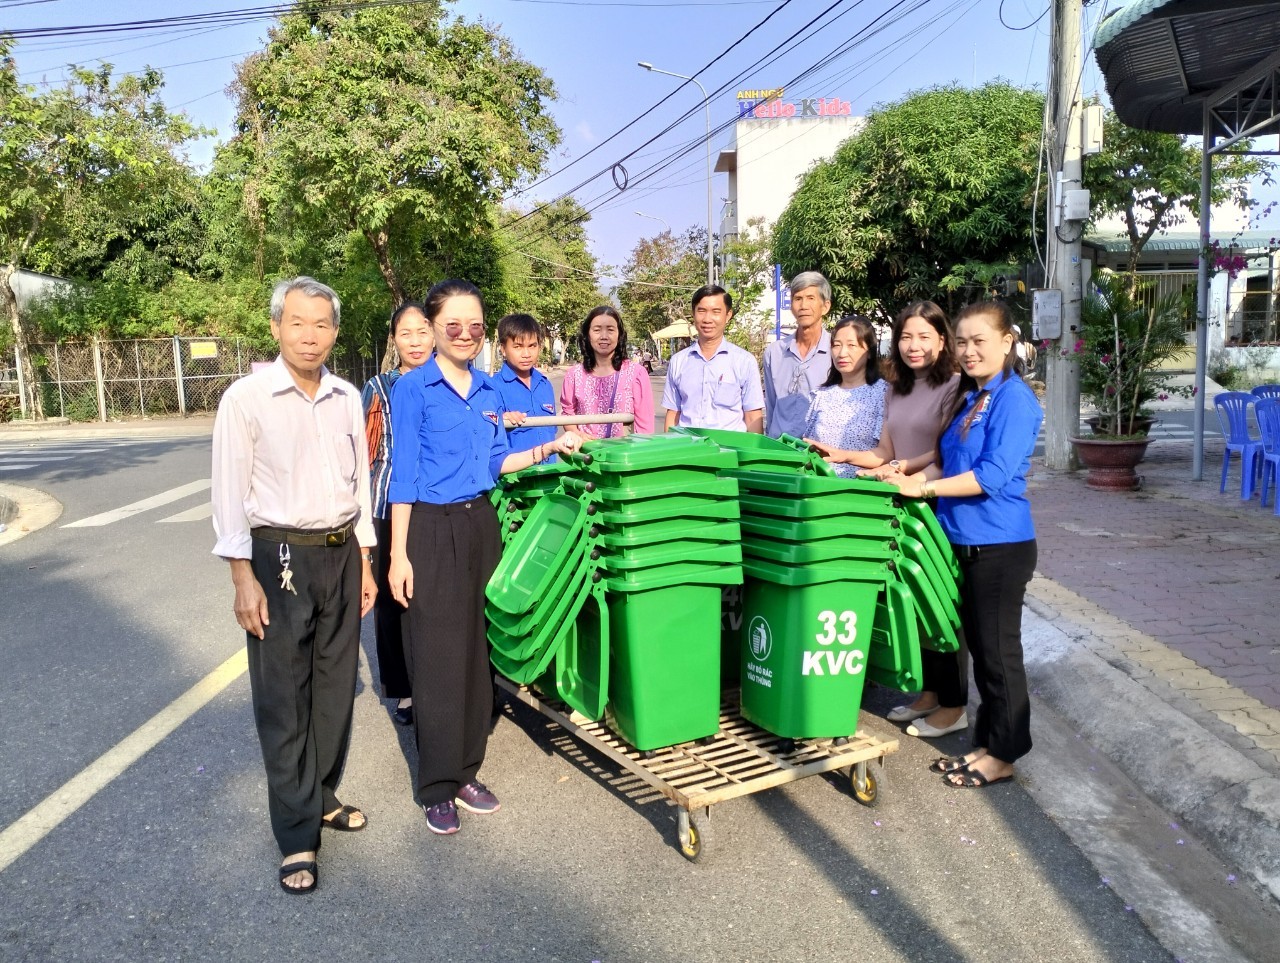 Ông Lê Xuân An, Phó Bí thư Thường trực Đảng ủy phường Long Tâm (thứ 5 từ phải sang) và đại diện KP.4 tặng thùng rác cho người dân.